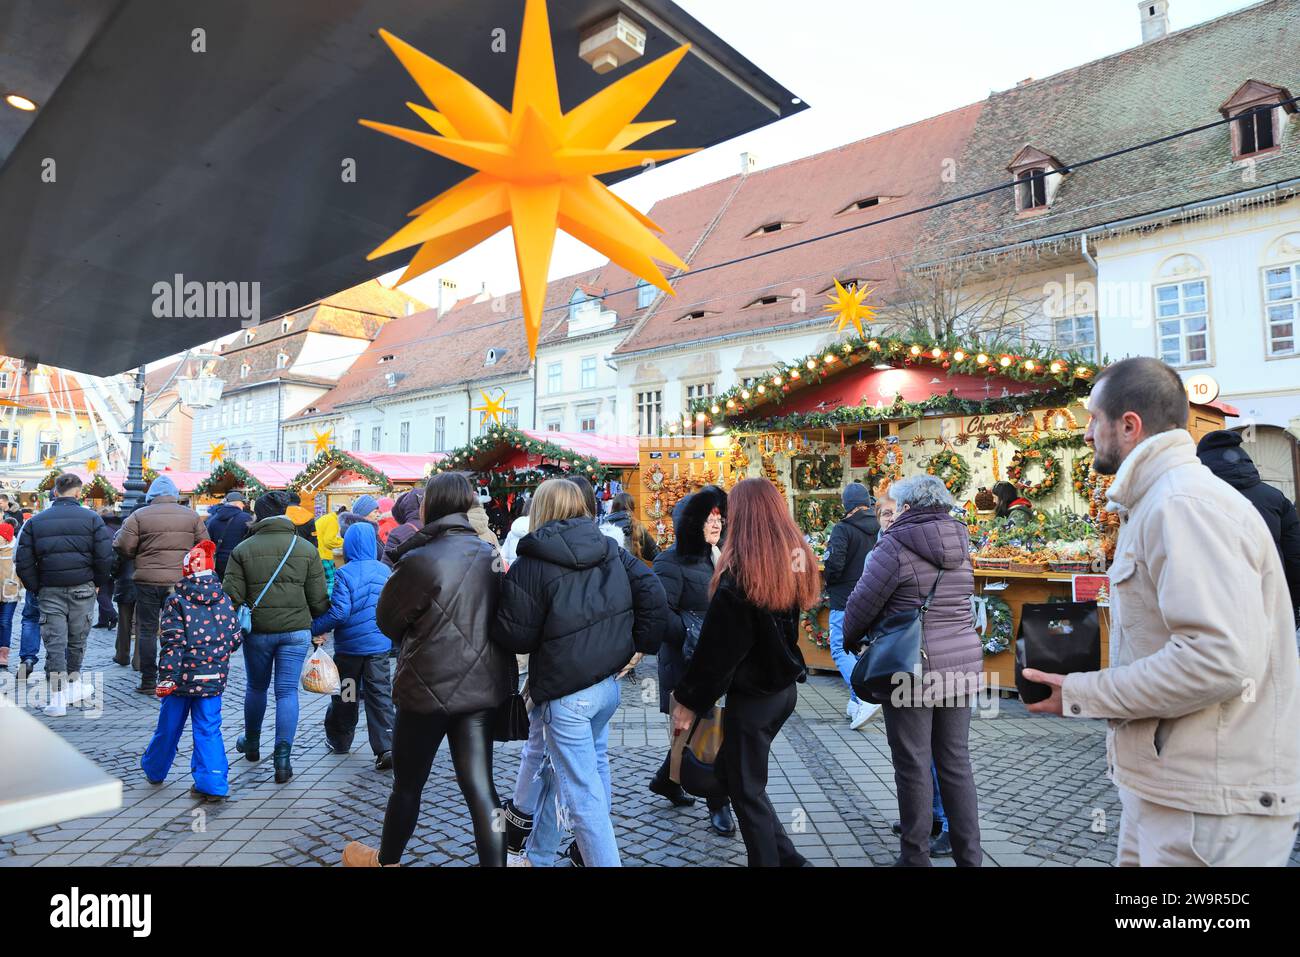 Hübscher Weihnachtsmarkt am Piata Mica, dem Großen Platz, in der historischen Stadt Sibiu, in Transsilvanien, Rumänien Stockfoto